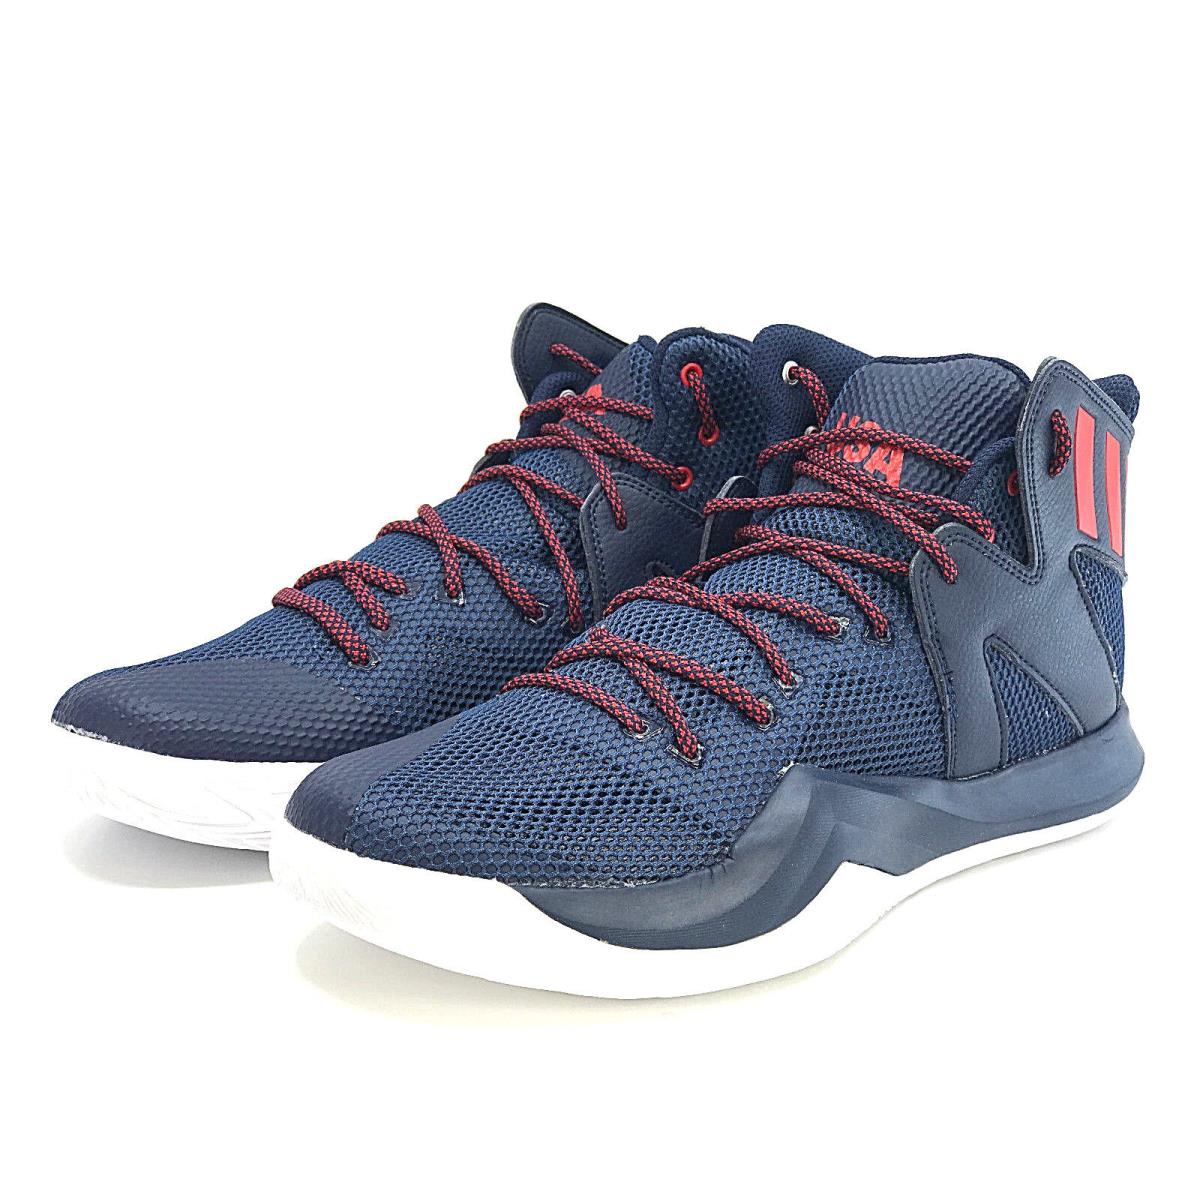 Adidas SM Crazy Bounce Usa Basketball Shoes Team Usa Blue Sneakers